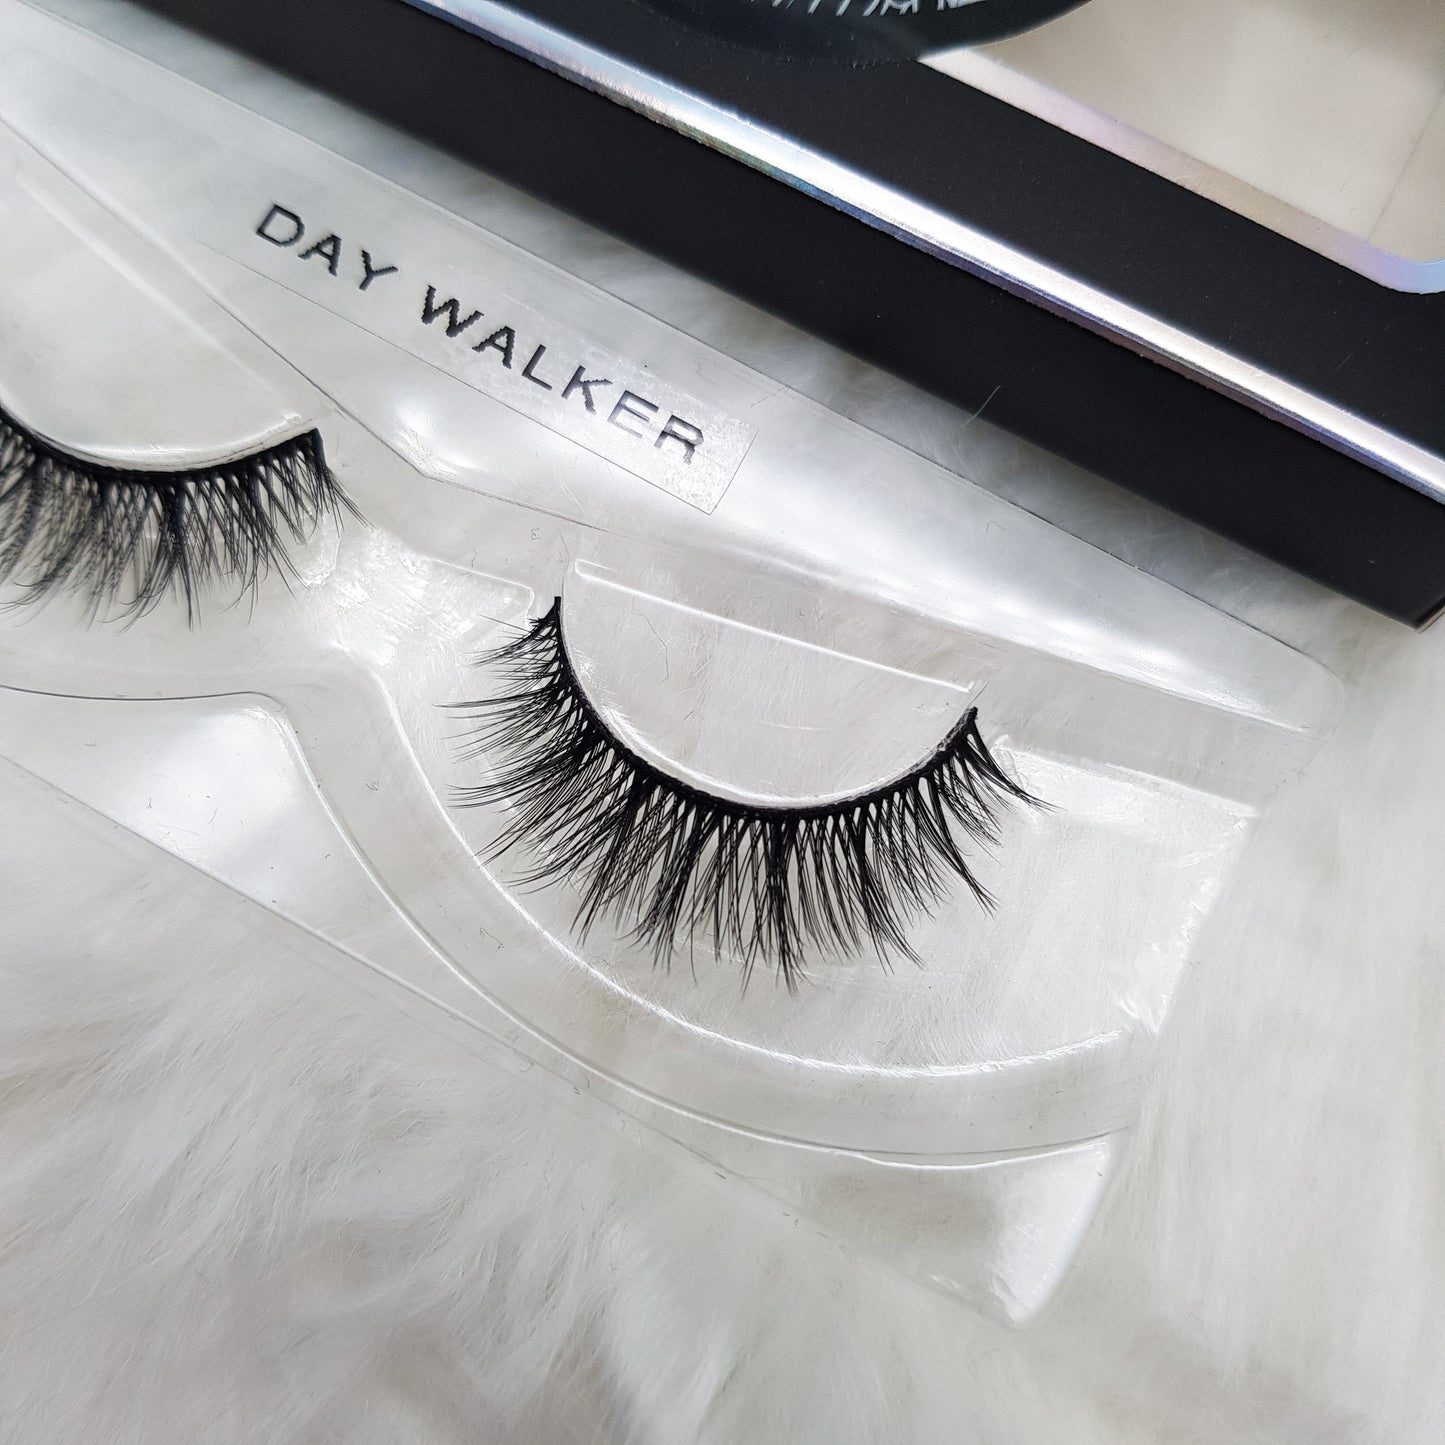 "Day walker" 3D luxury faux mink lashes